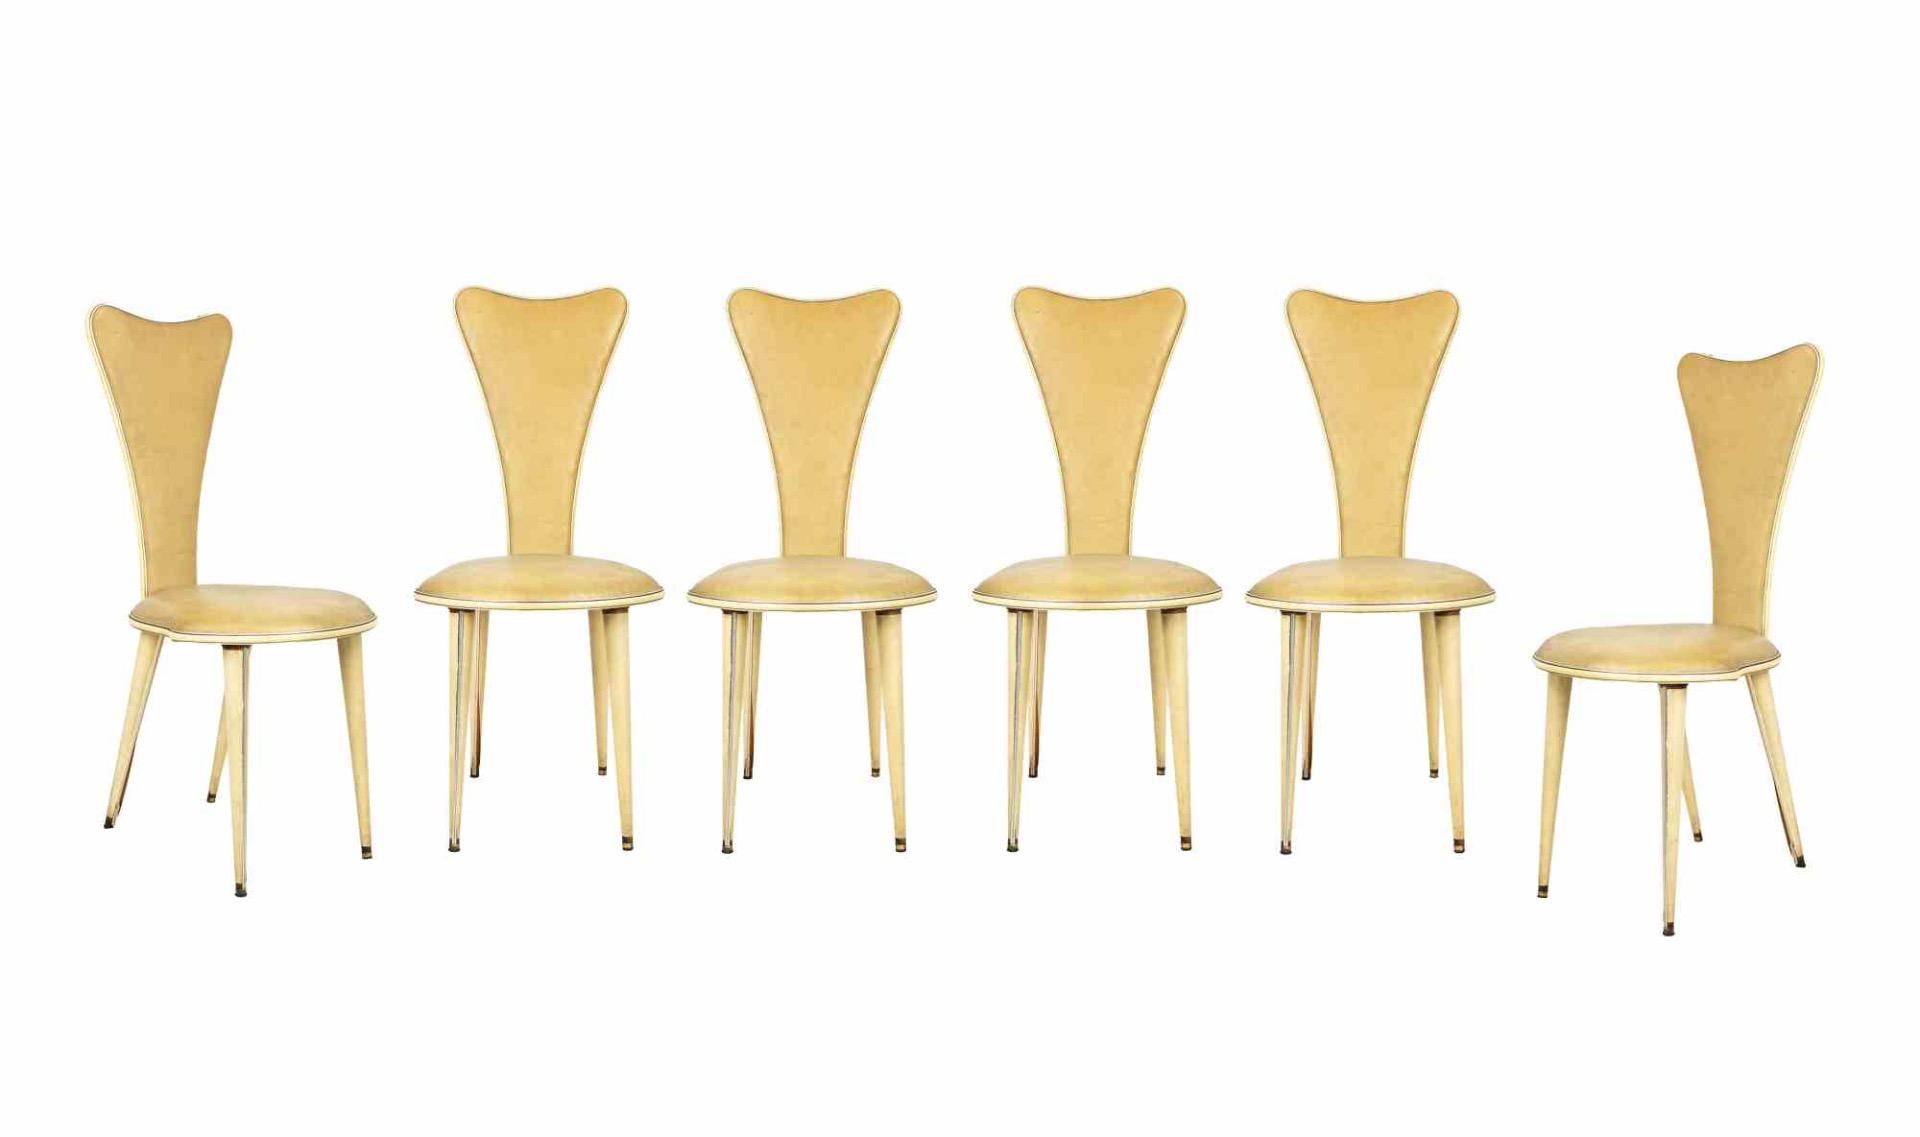 Der Esstisch mit sechs Stühlen ist ein originelles Designmöbel von Umberto Mascagni aus den 1950er Jahren.

Das Set besteht aus einem Esstisch mit sechs Stühlen.

Hergestellt in Italien

Holzrahmen, weißer Kunstlederbezug,